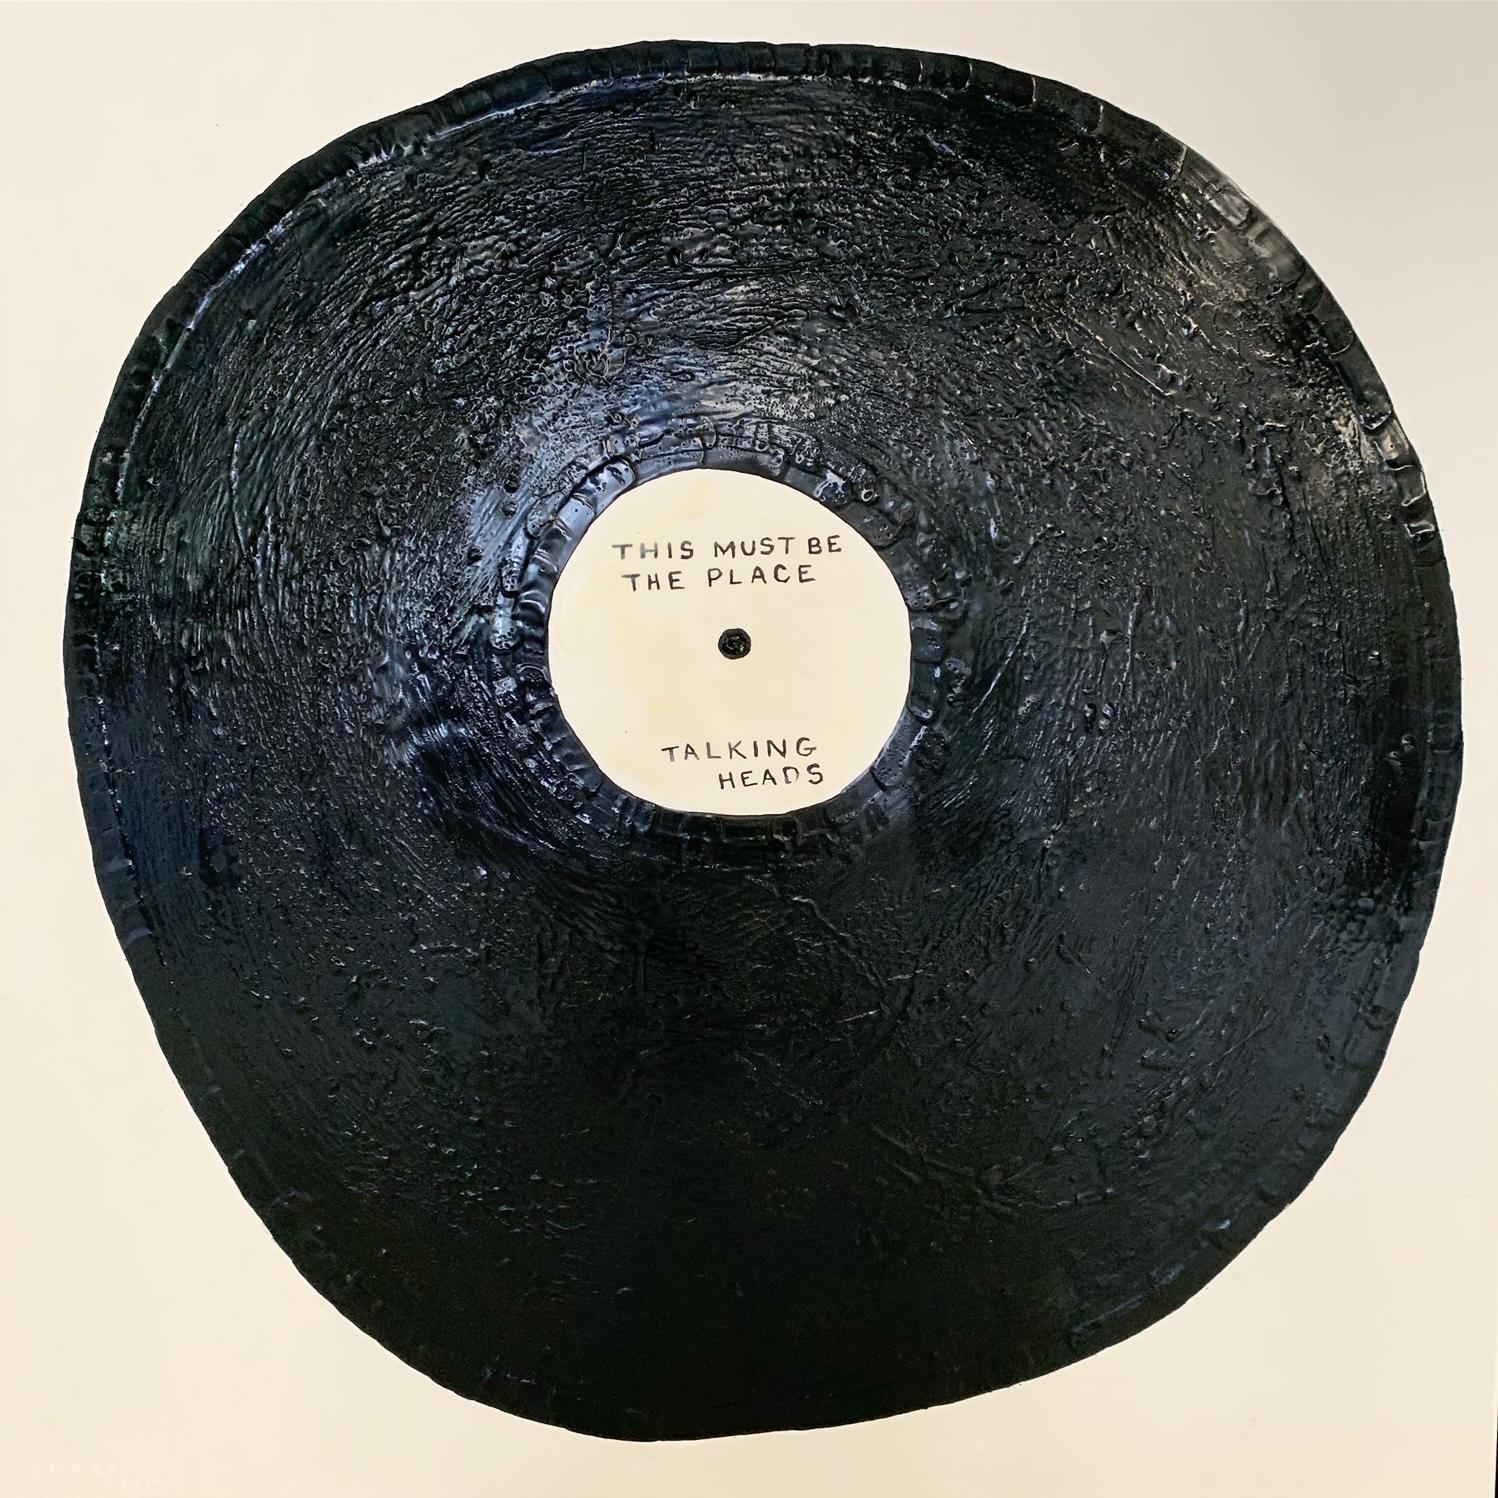 Custom vinyl record art